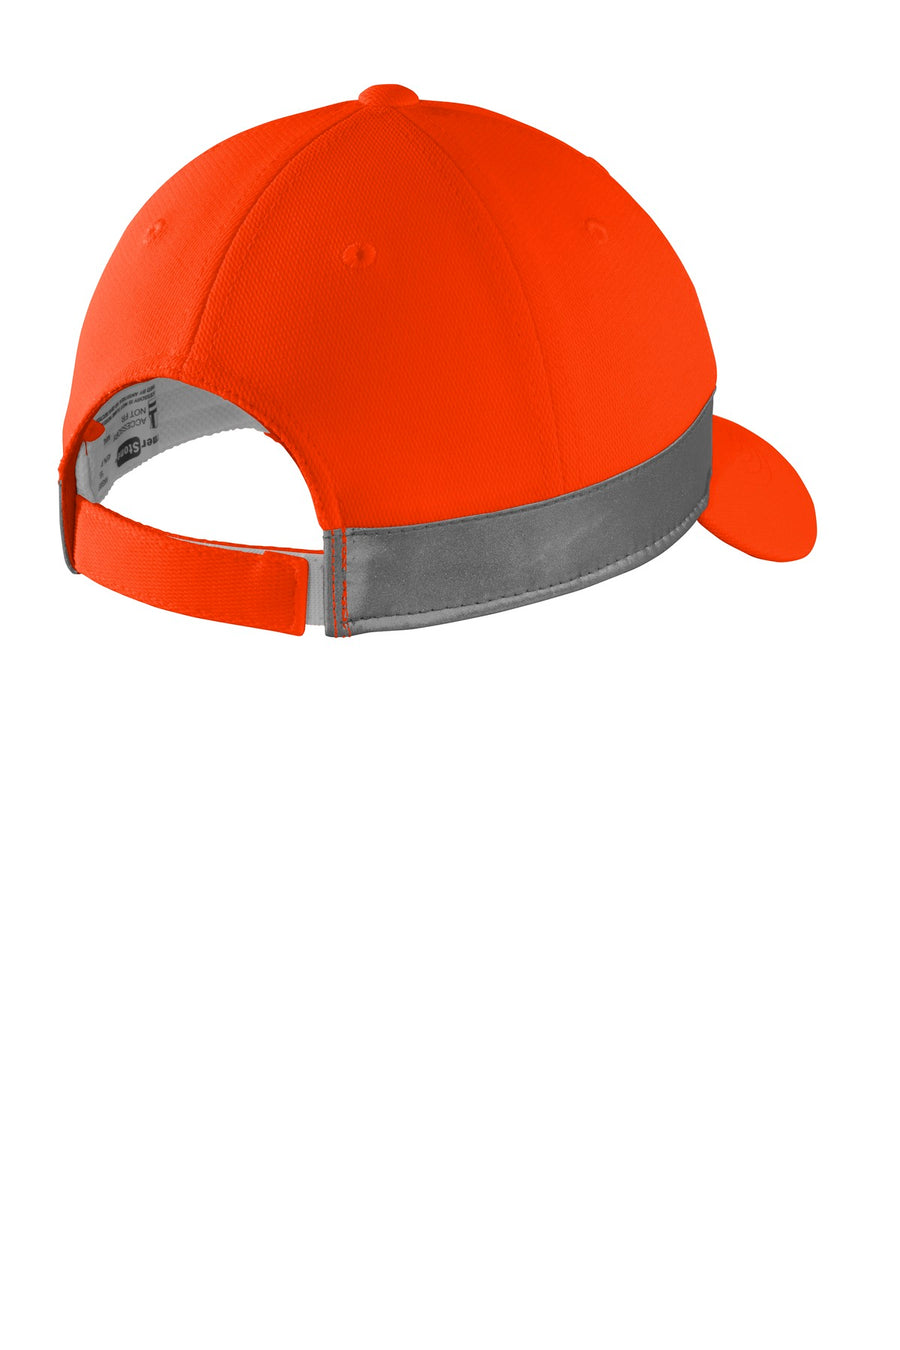 CS802-Safety Orange-back_flat